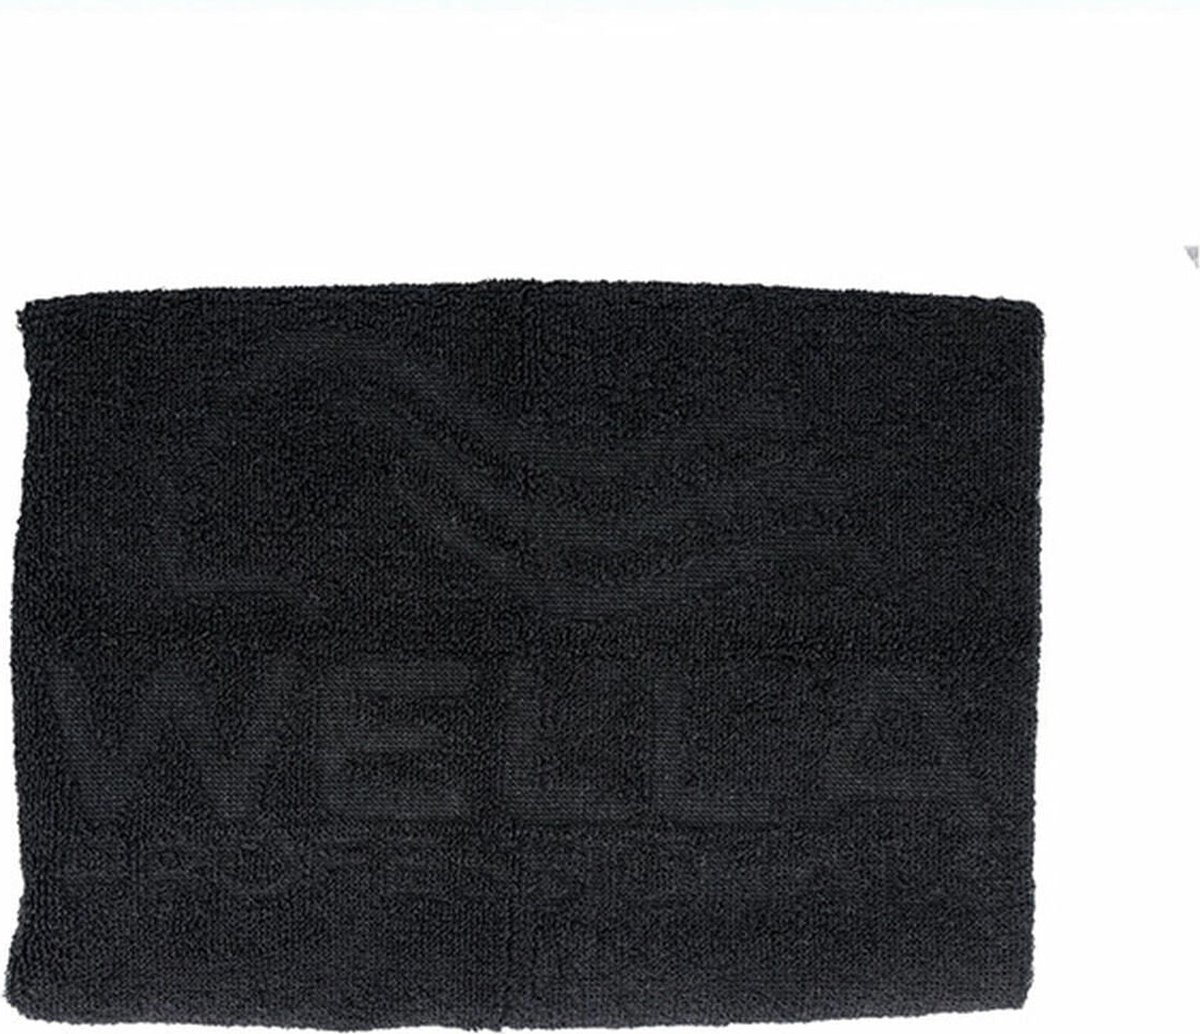 Handdoeken Wella (50 x 90 cm)